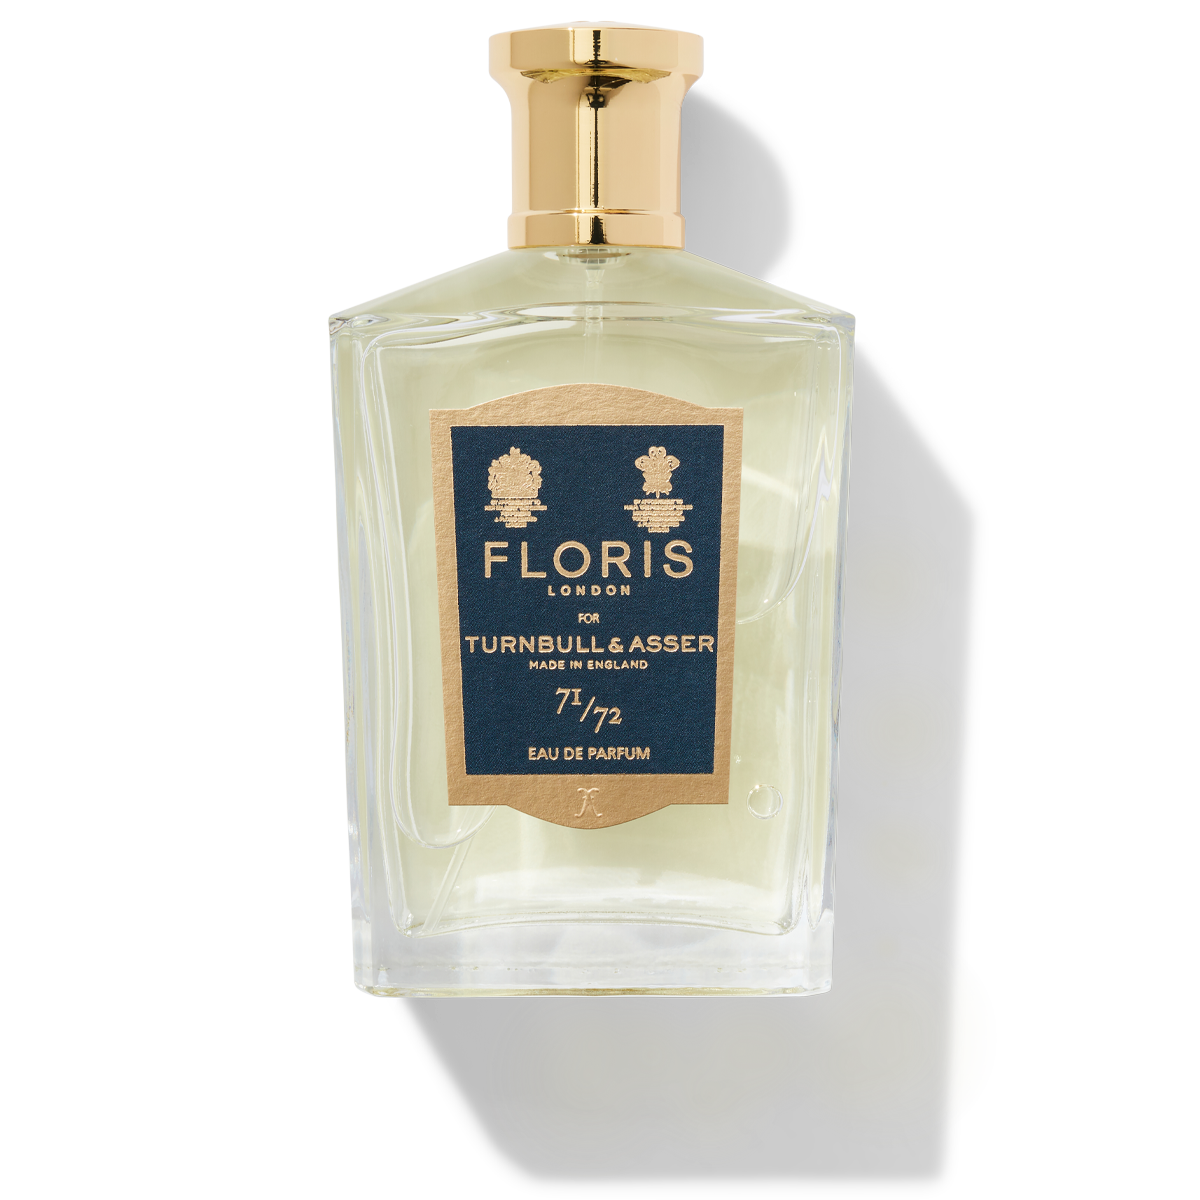 Bottle of Floris London 71/72 Eau de Parfum 